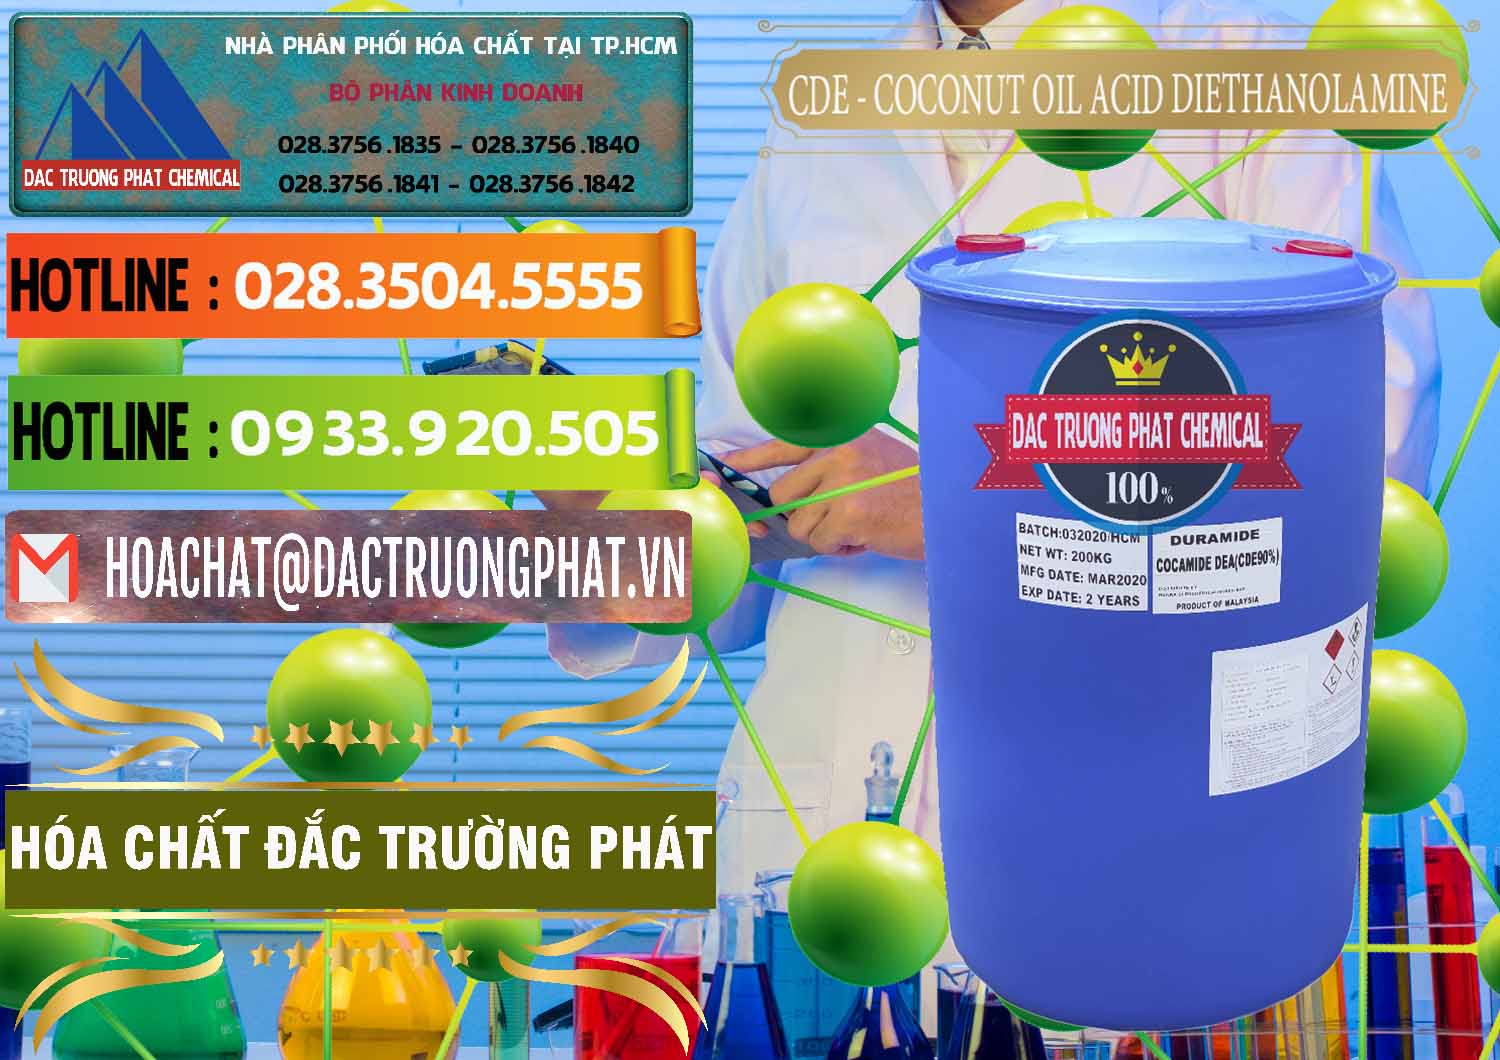 Cung ứng ( bán ) CDE - Coconut Oil Acid Diethanolamine Mã Lai Malaysia - 0311 - Nơi chuyên bán và phân phối hóa chất tại TP.HCM - cungcaphoachat.com.vn